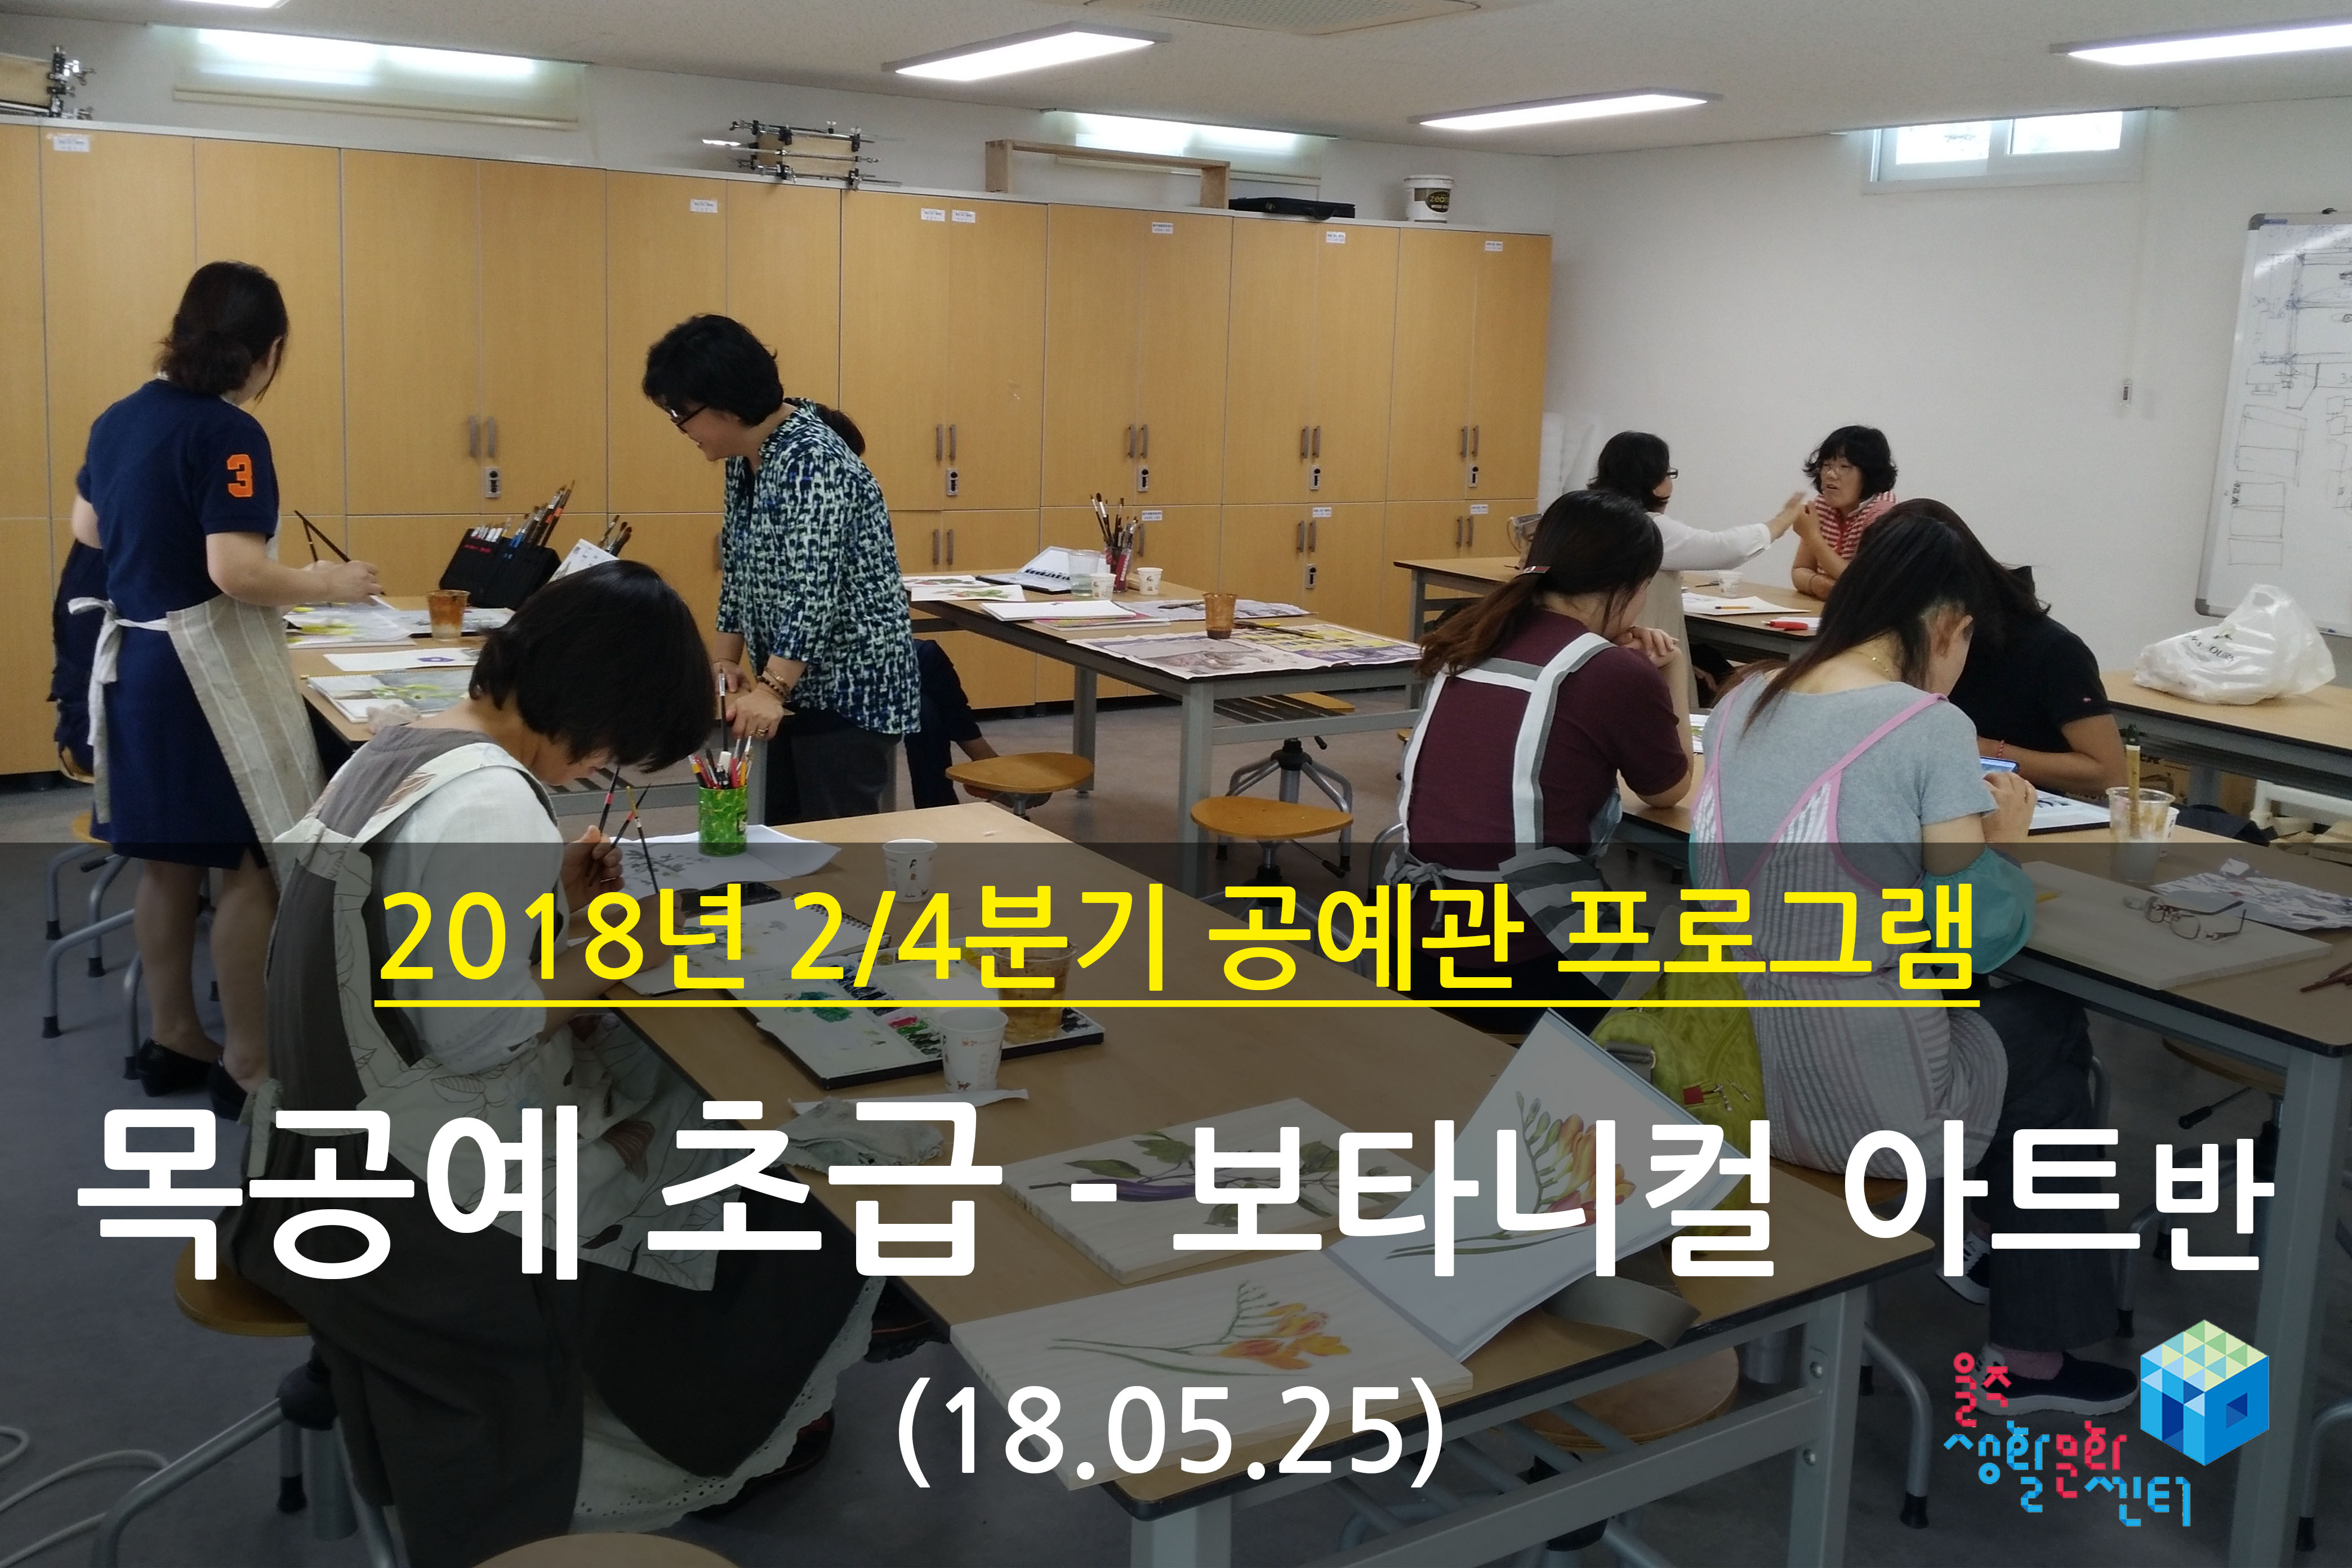 2018.05.25 _ 목공예 초급 - 보타니컬 아트반 _ 2/4분기 8주차 수업